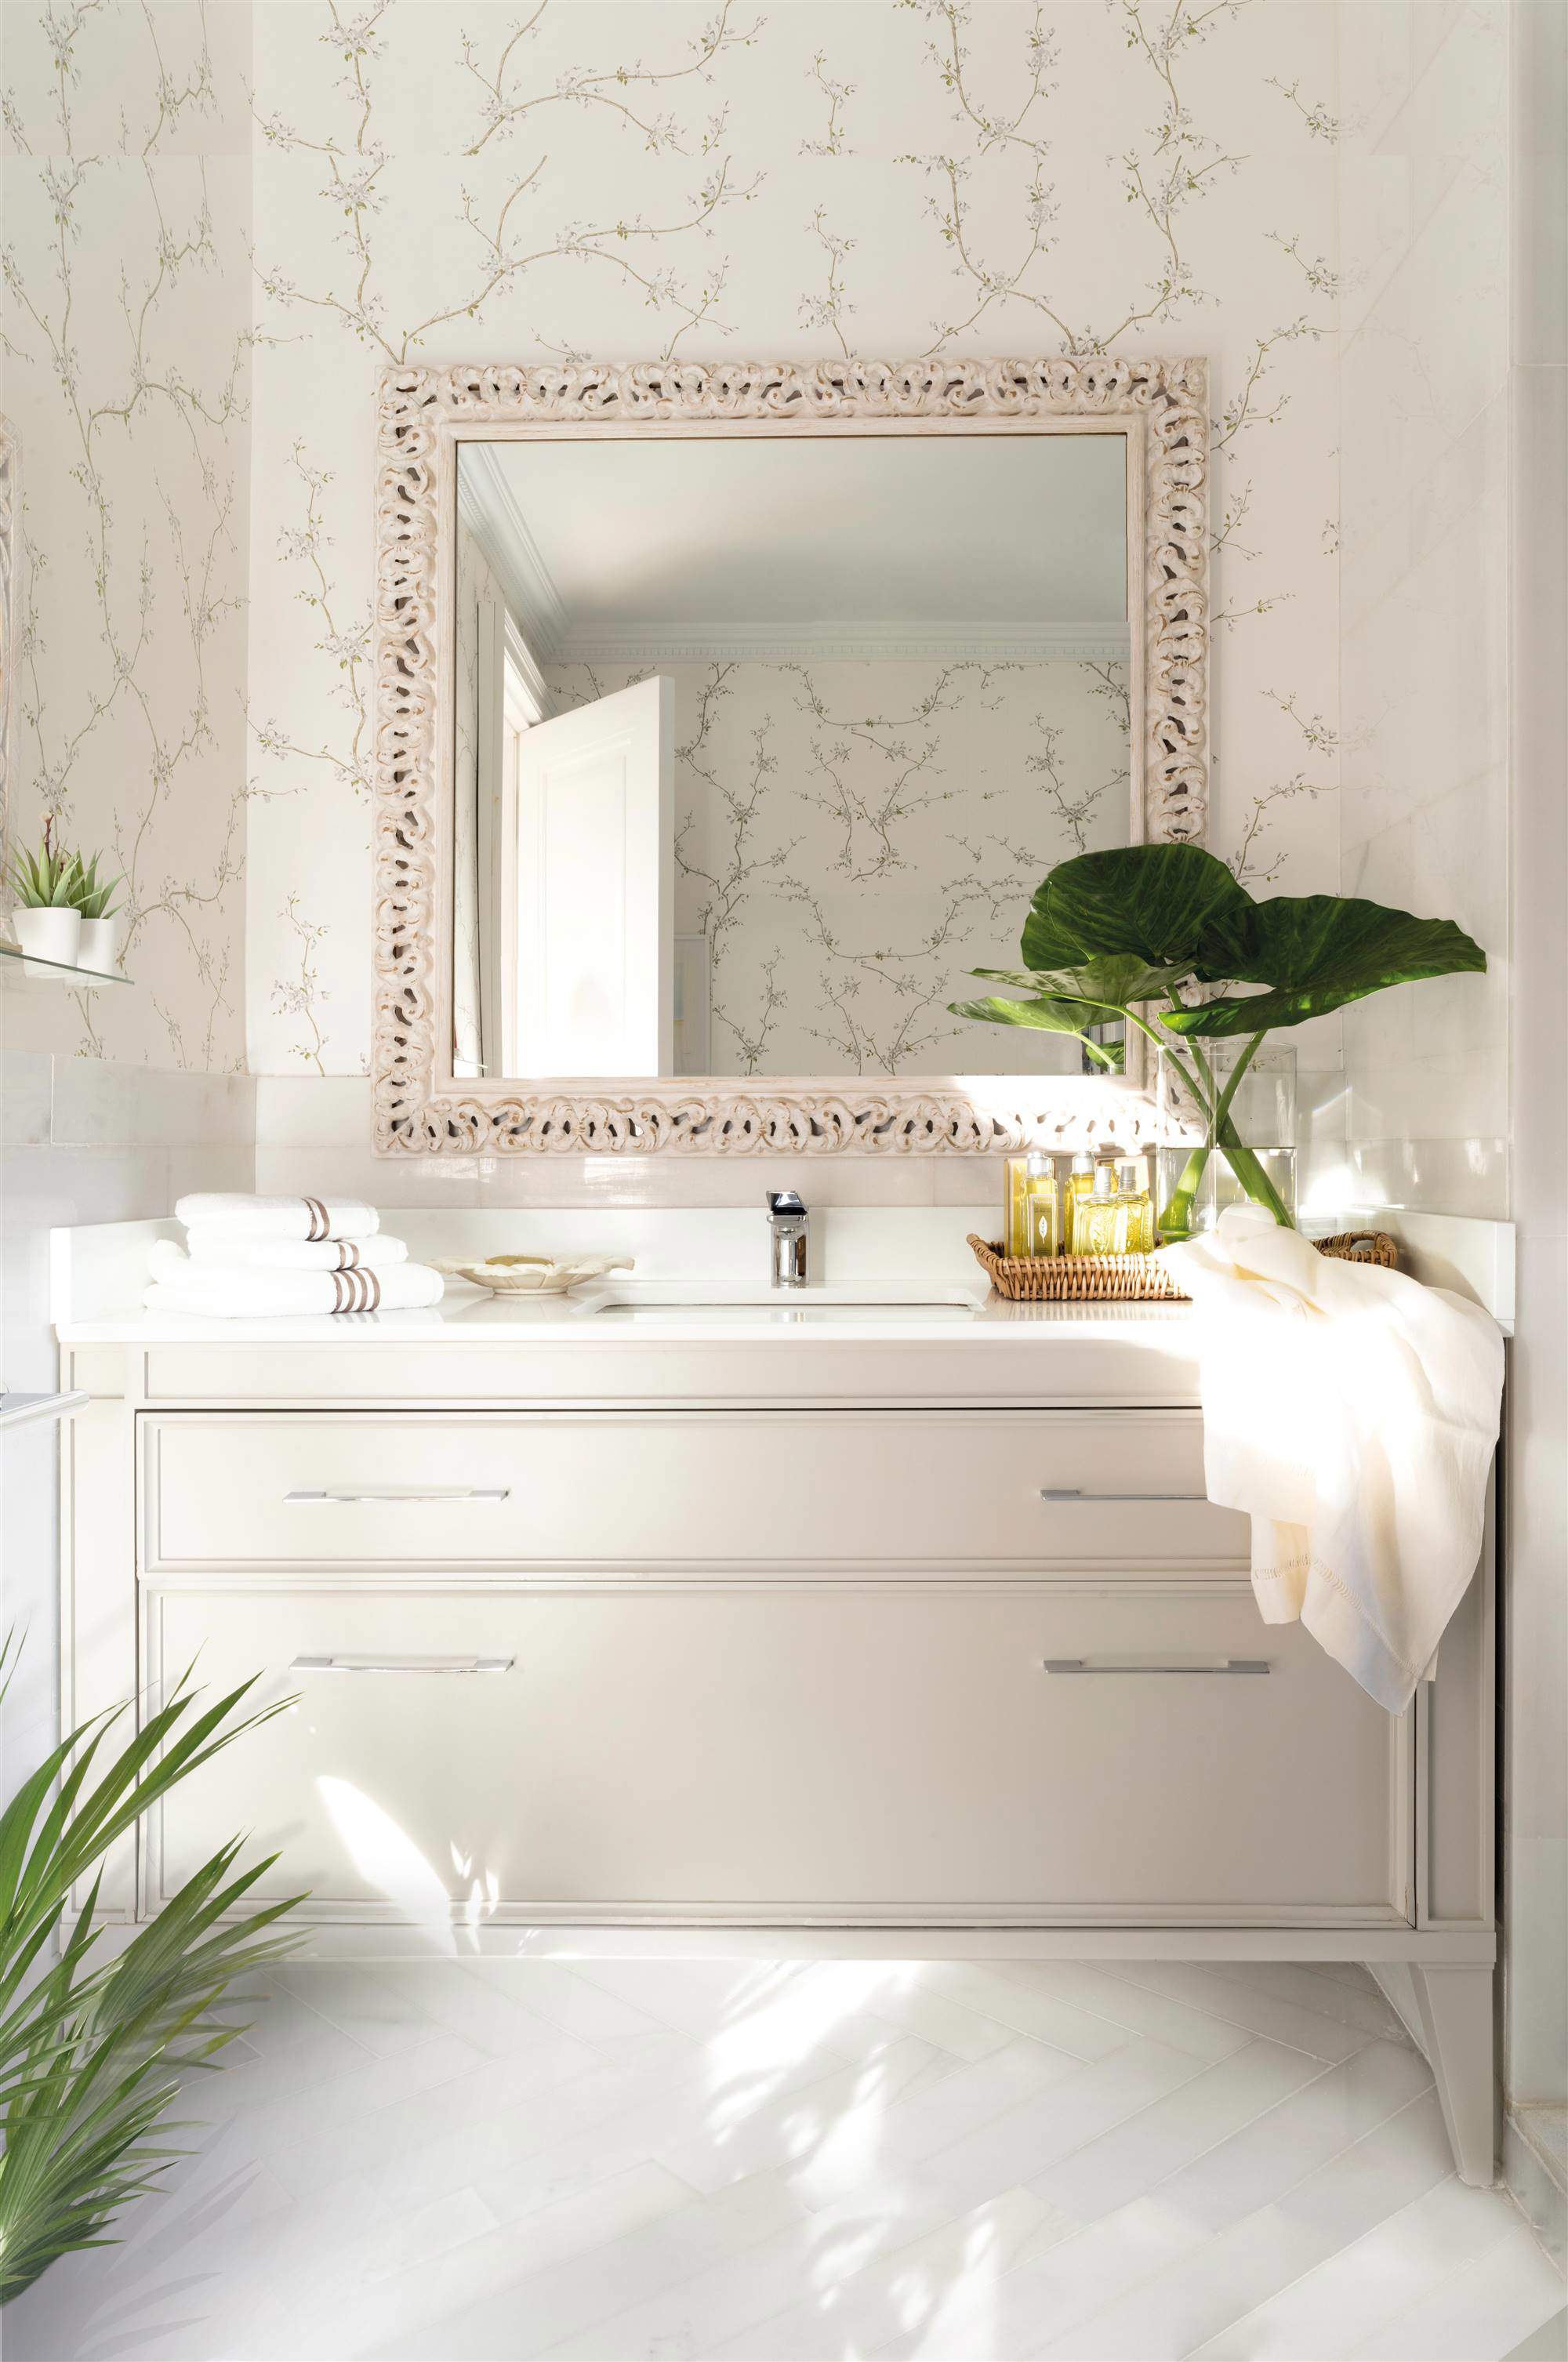 Baño con frente de papel pintado floral y mueble beige.